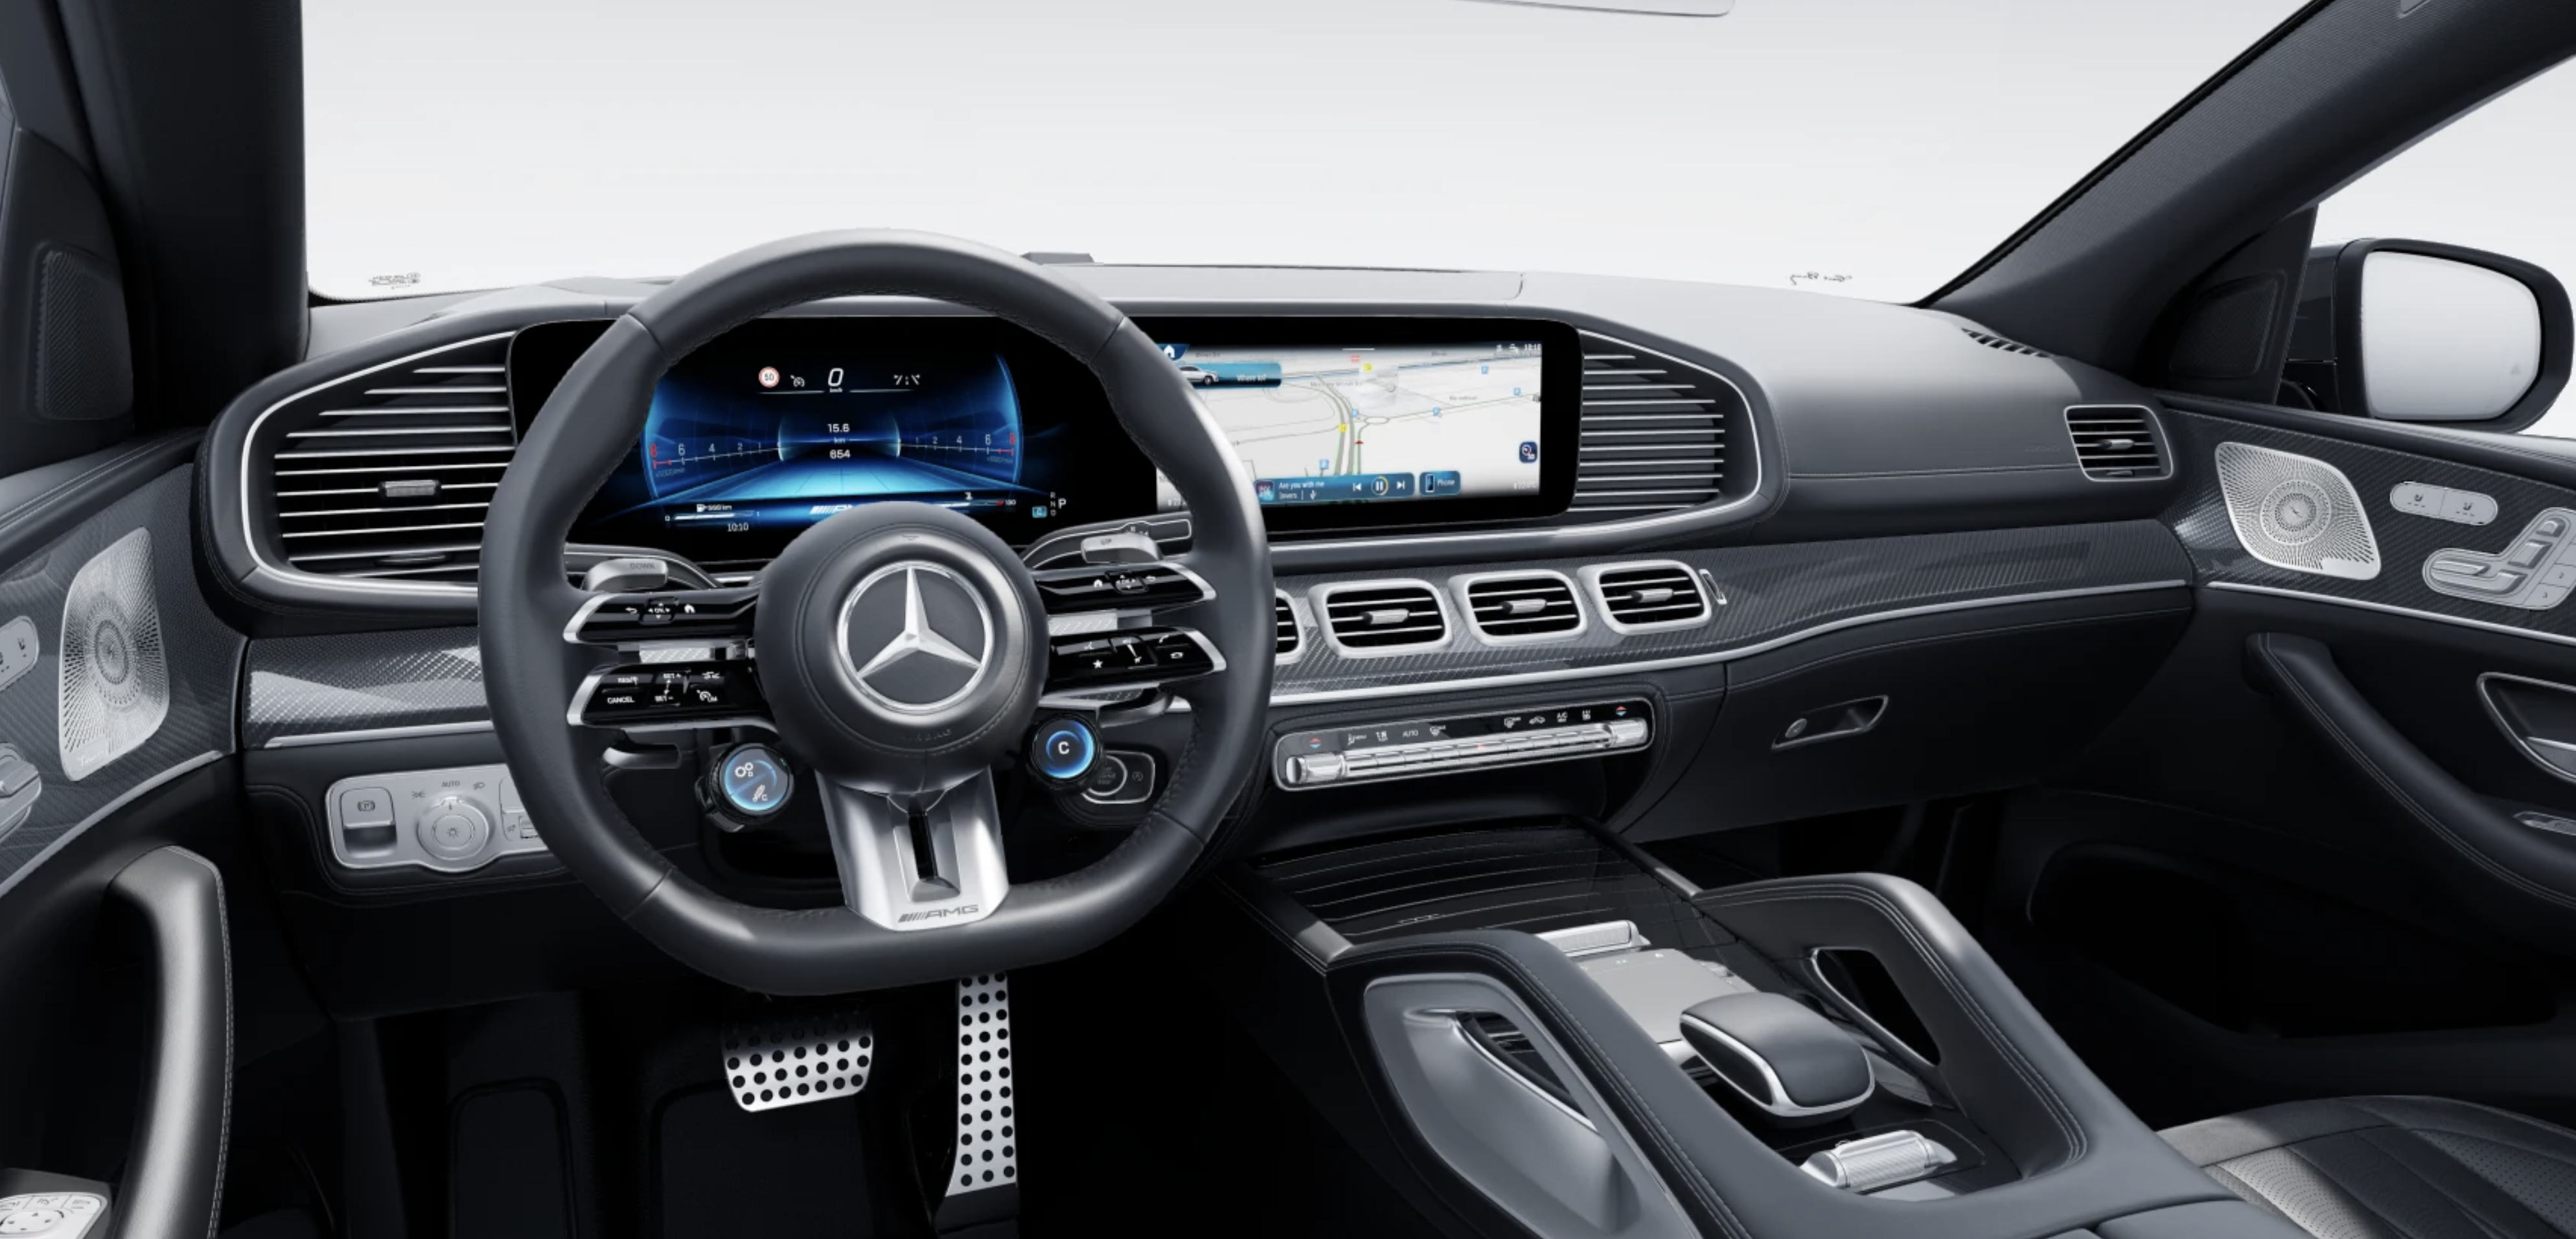 Mercedes GLE COUPE 63 S AMG | nové české auto objednané do výroby | šedé s černou kůží | maximální výbava | FACELIFT | super cena | nákup online | auto eshop AUTOiBUY.com